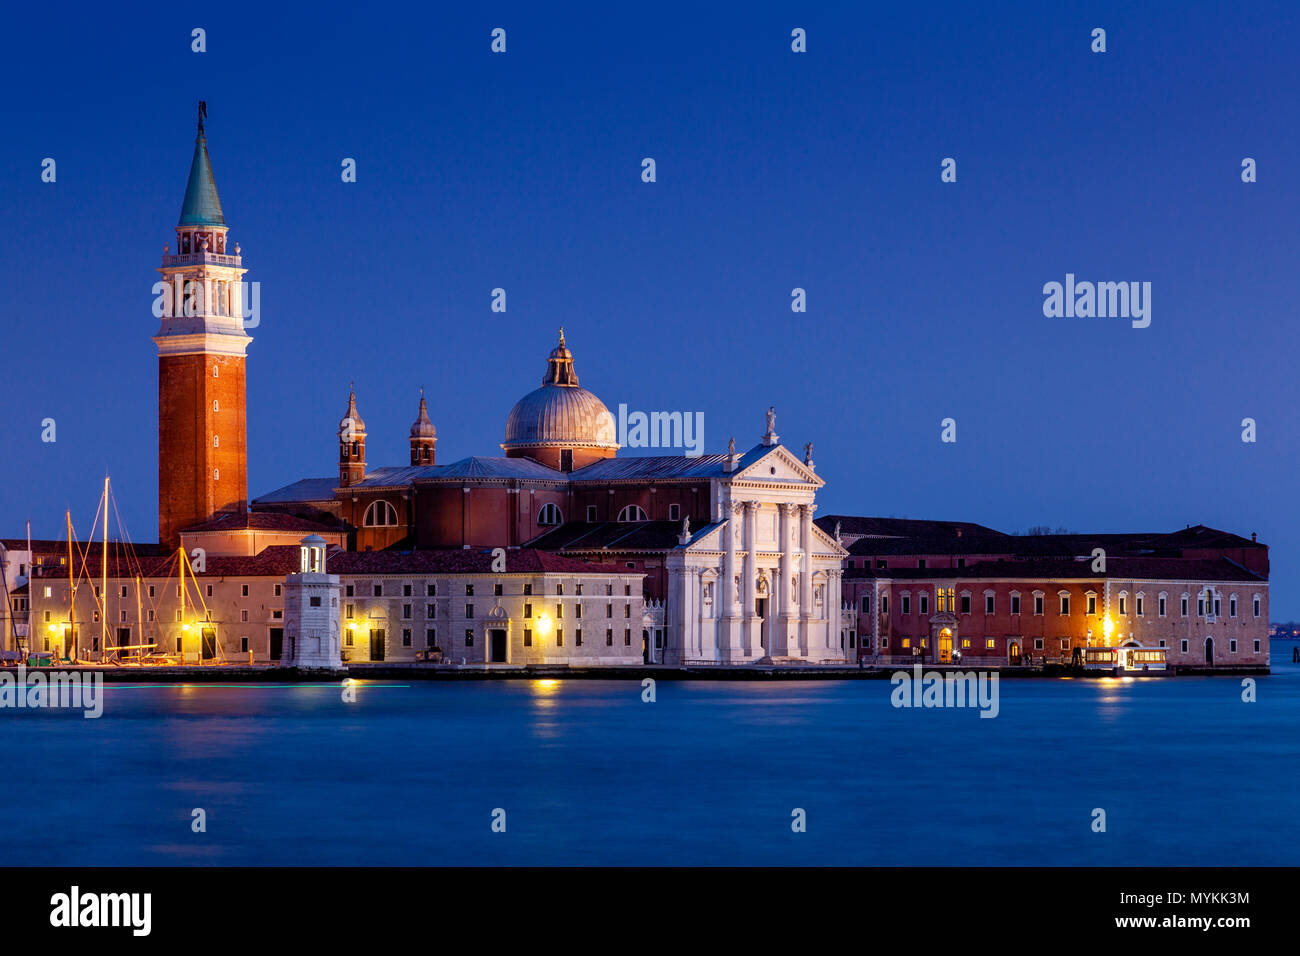 L'église de San Giorgio Maggiore sur l'île de San Giorgio Maggiore, à Venise, Italie Banque D'Images